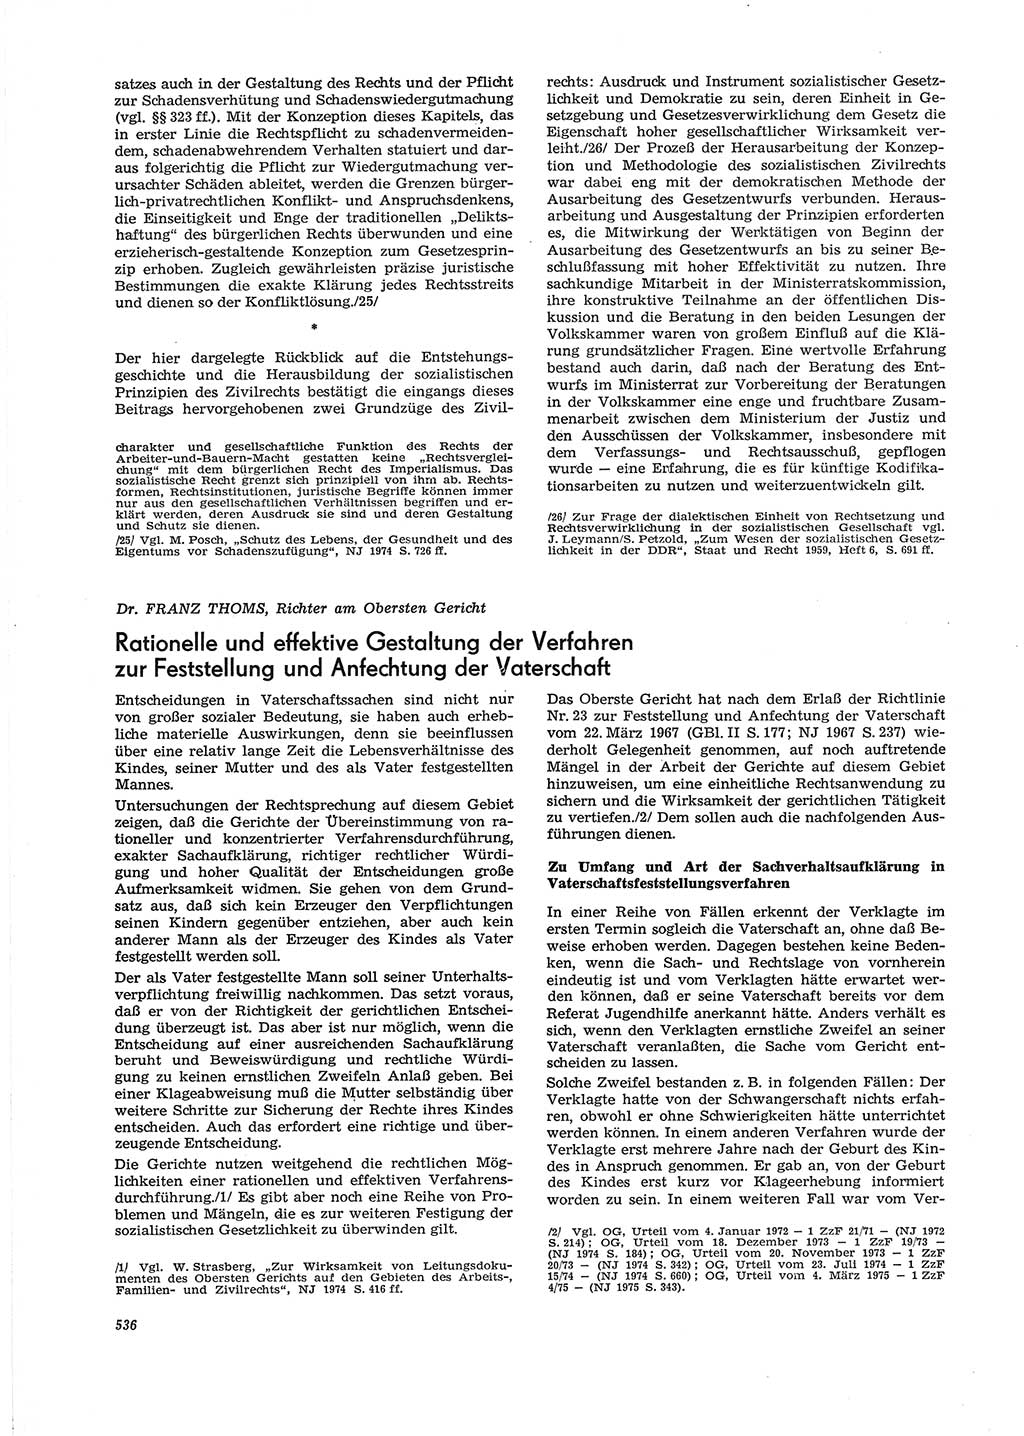 Neue Justiz (NJ), Zeitschrift für Recht und Rechtswissenschaft [Deutsche Demokratische Republik (DDR)], 29. Jahrgang 1975, Seite 536 (NJ DDR 1975, S. 536)